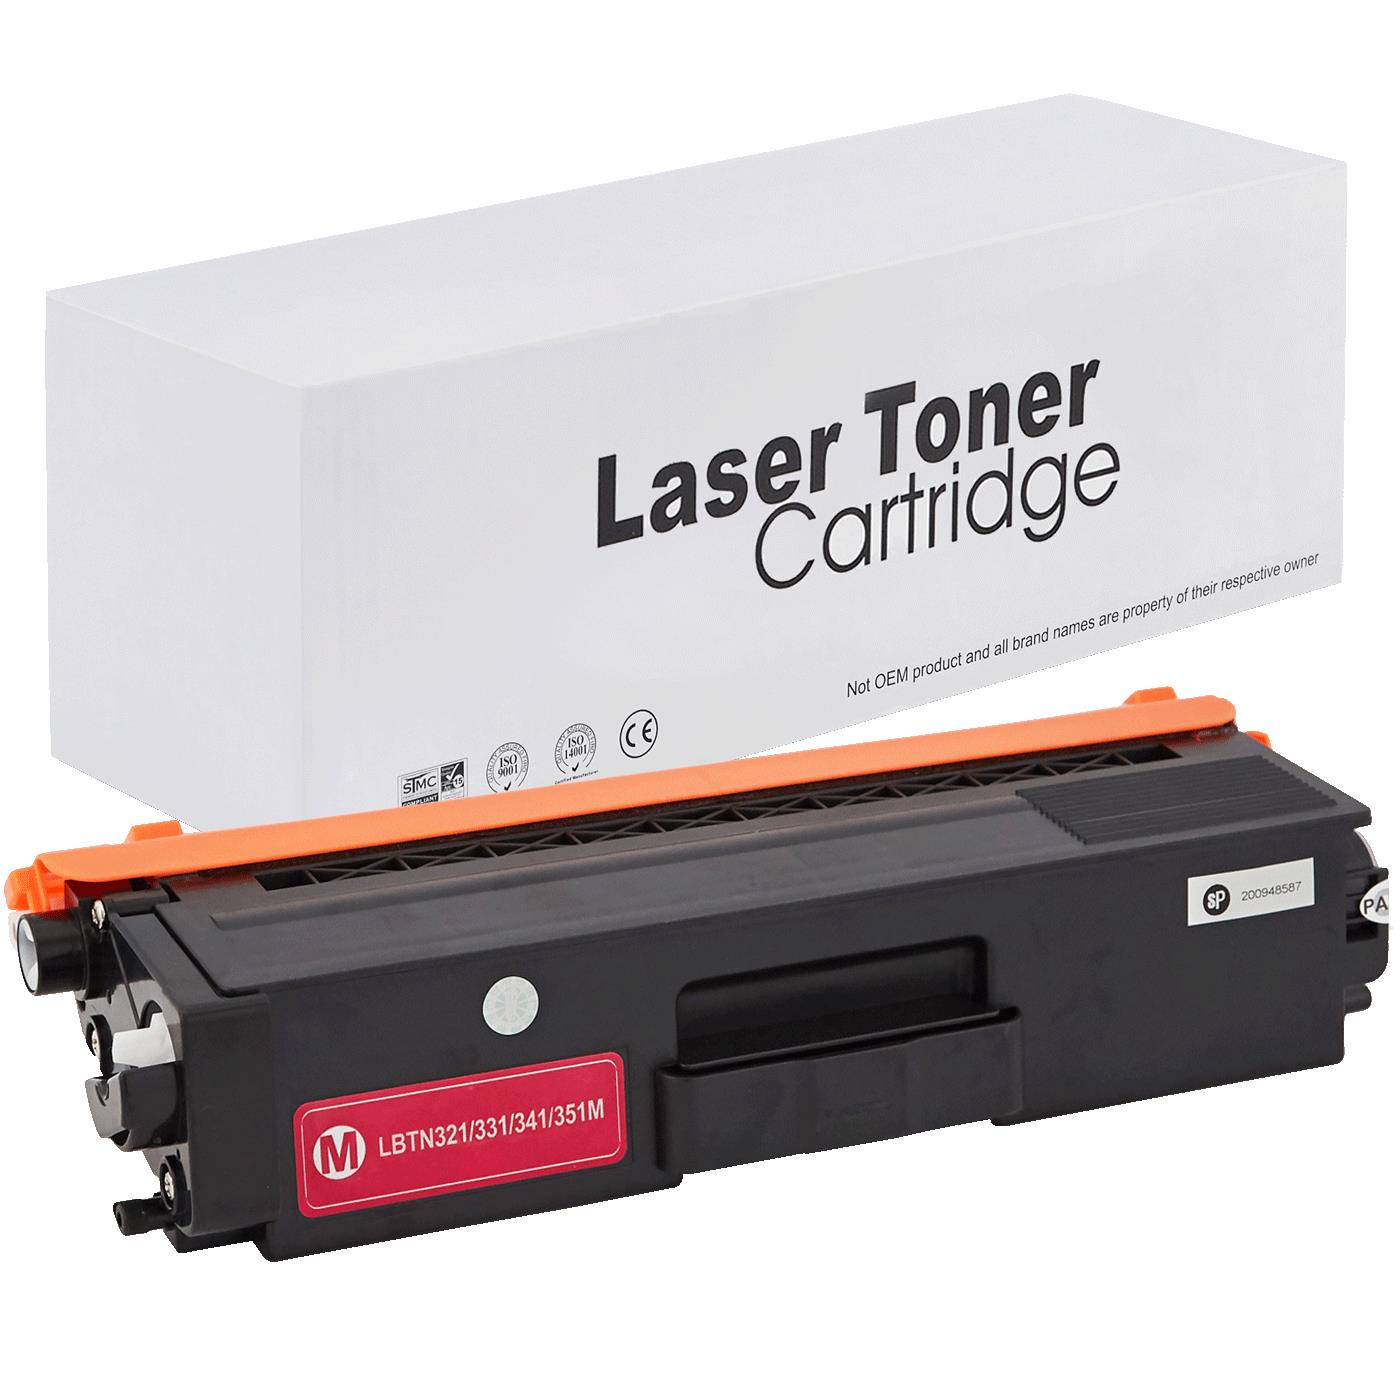 съвместима тонер касета за принтери и печатащи устройства на Brother HL-L 8350 CDW Toner BR-321M | TN321M. Ниски цени, прецизно изпълнение, високо качество.